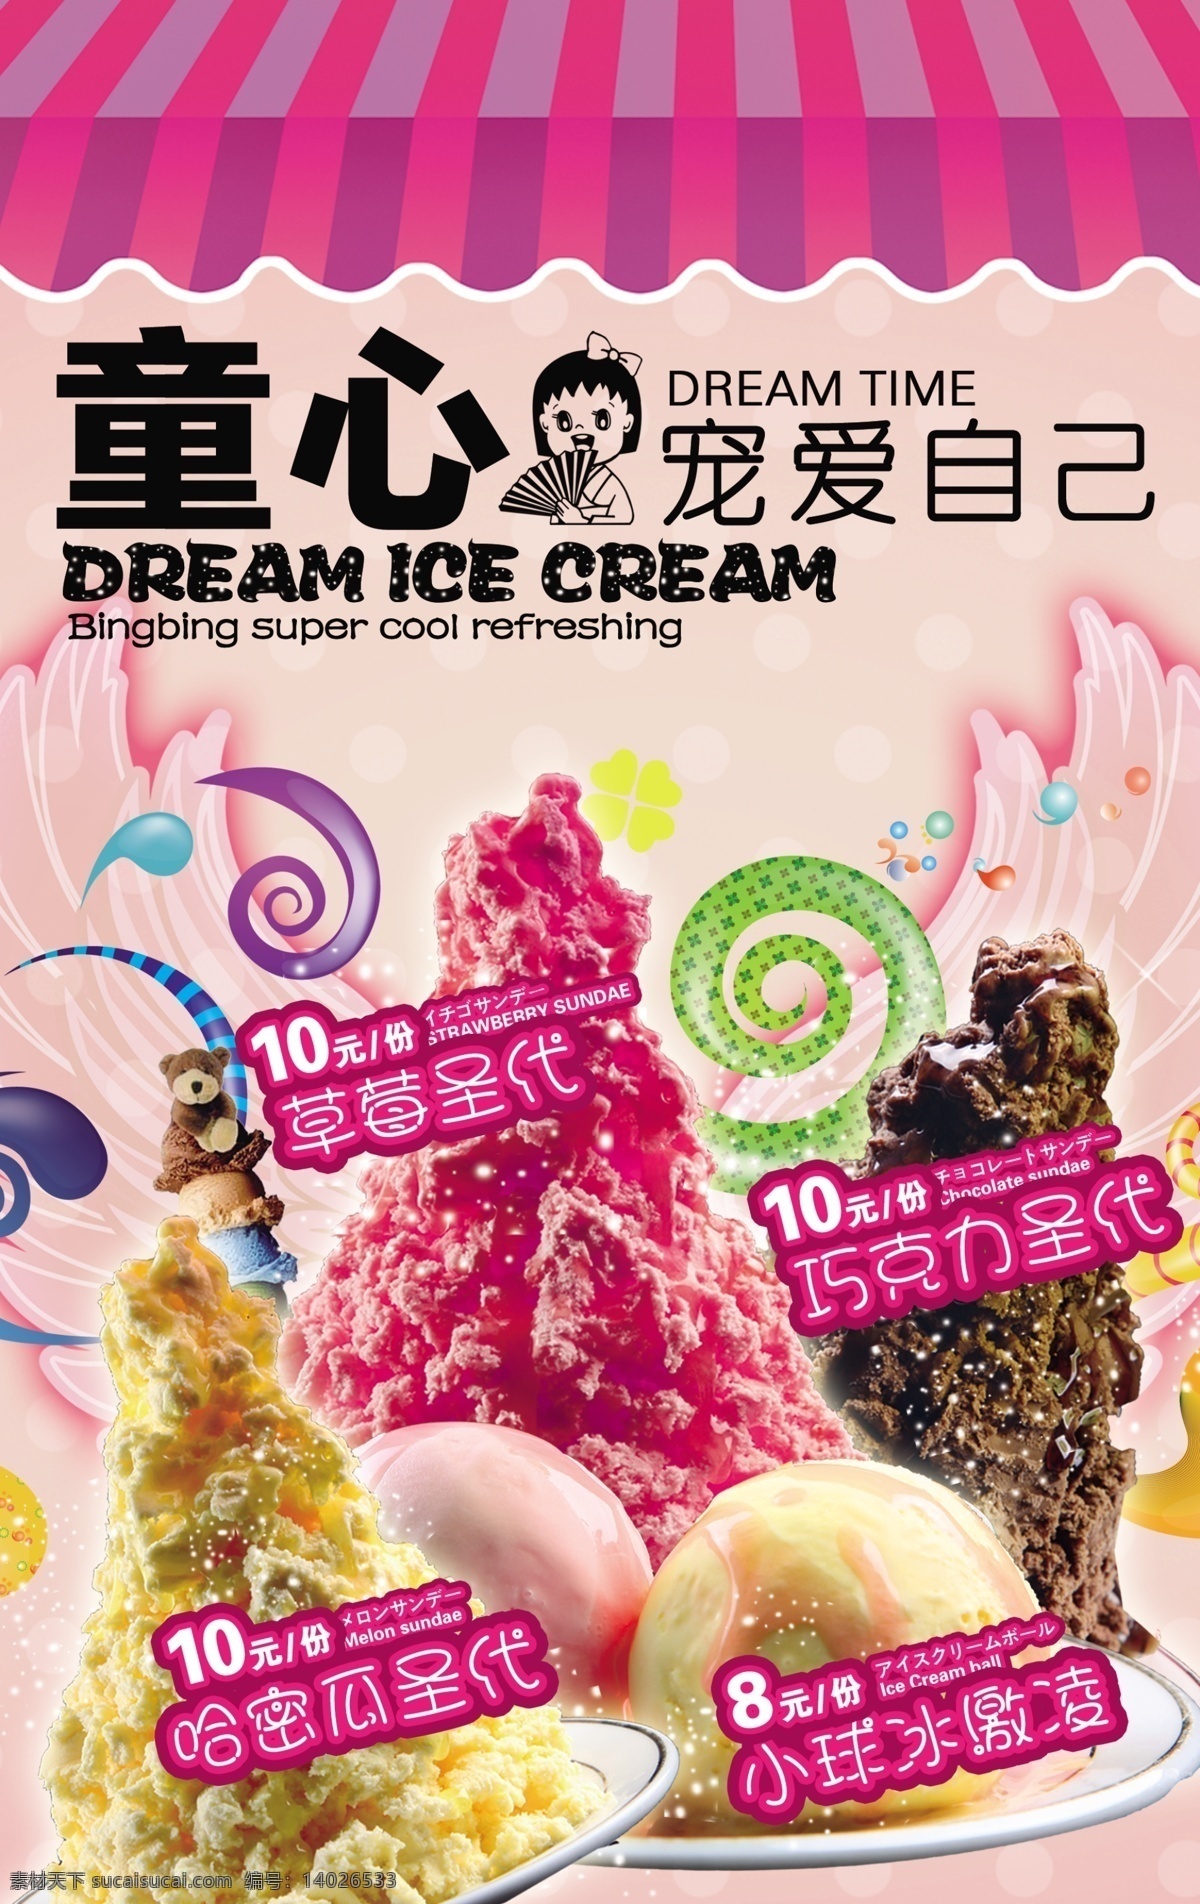 冰淇淋广告 草莓圣代 草莓冰淇淋 巧克力冰淇淋 哈密瓜圣代 冰淇淋 夏季冷饮广告 广告设计模板 源文件